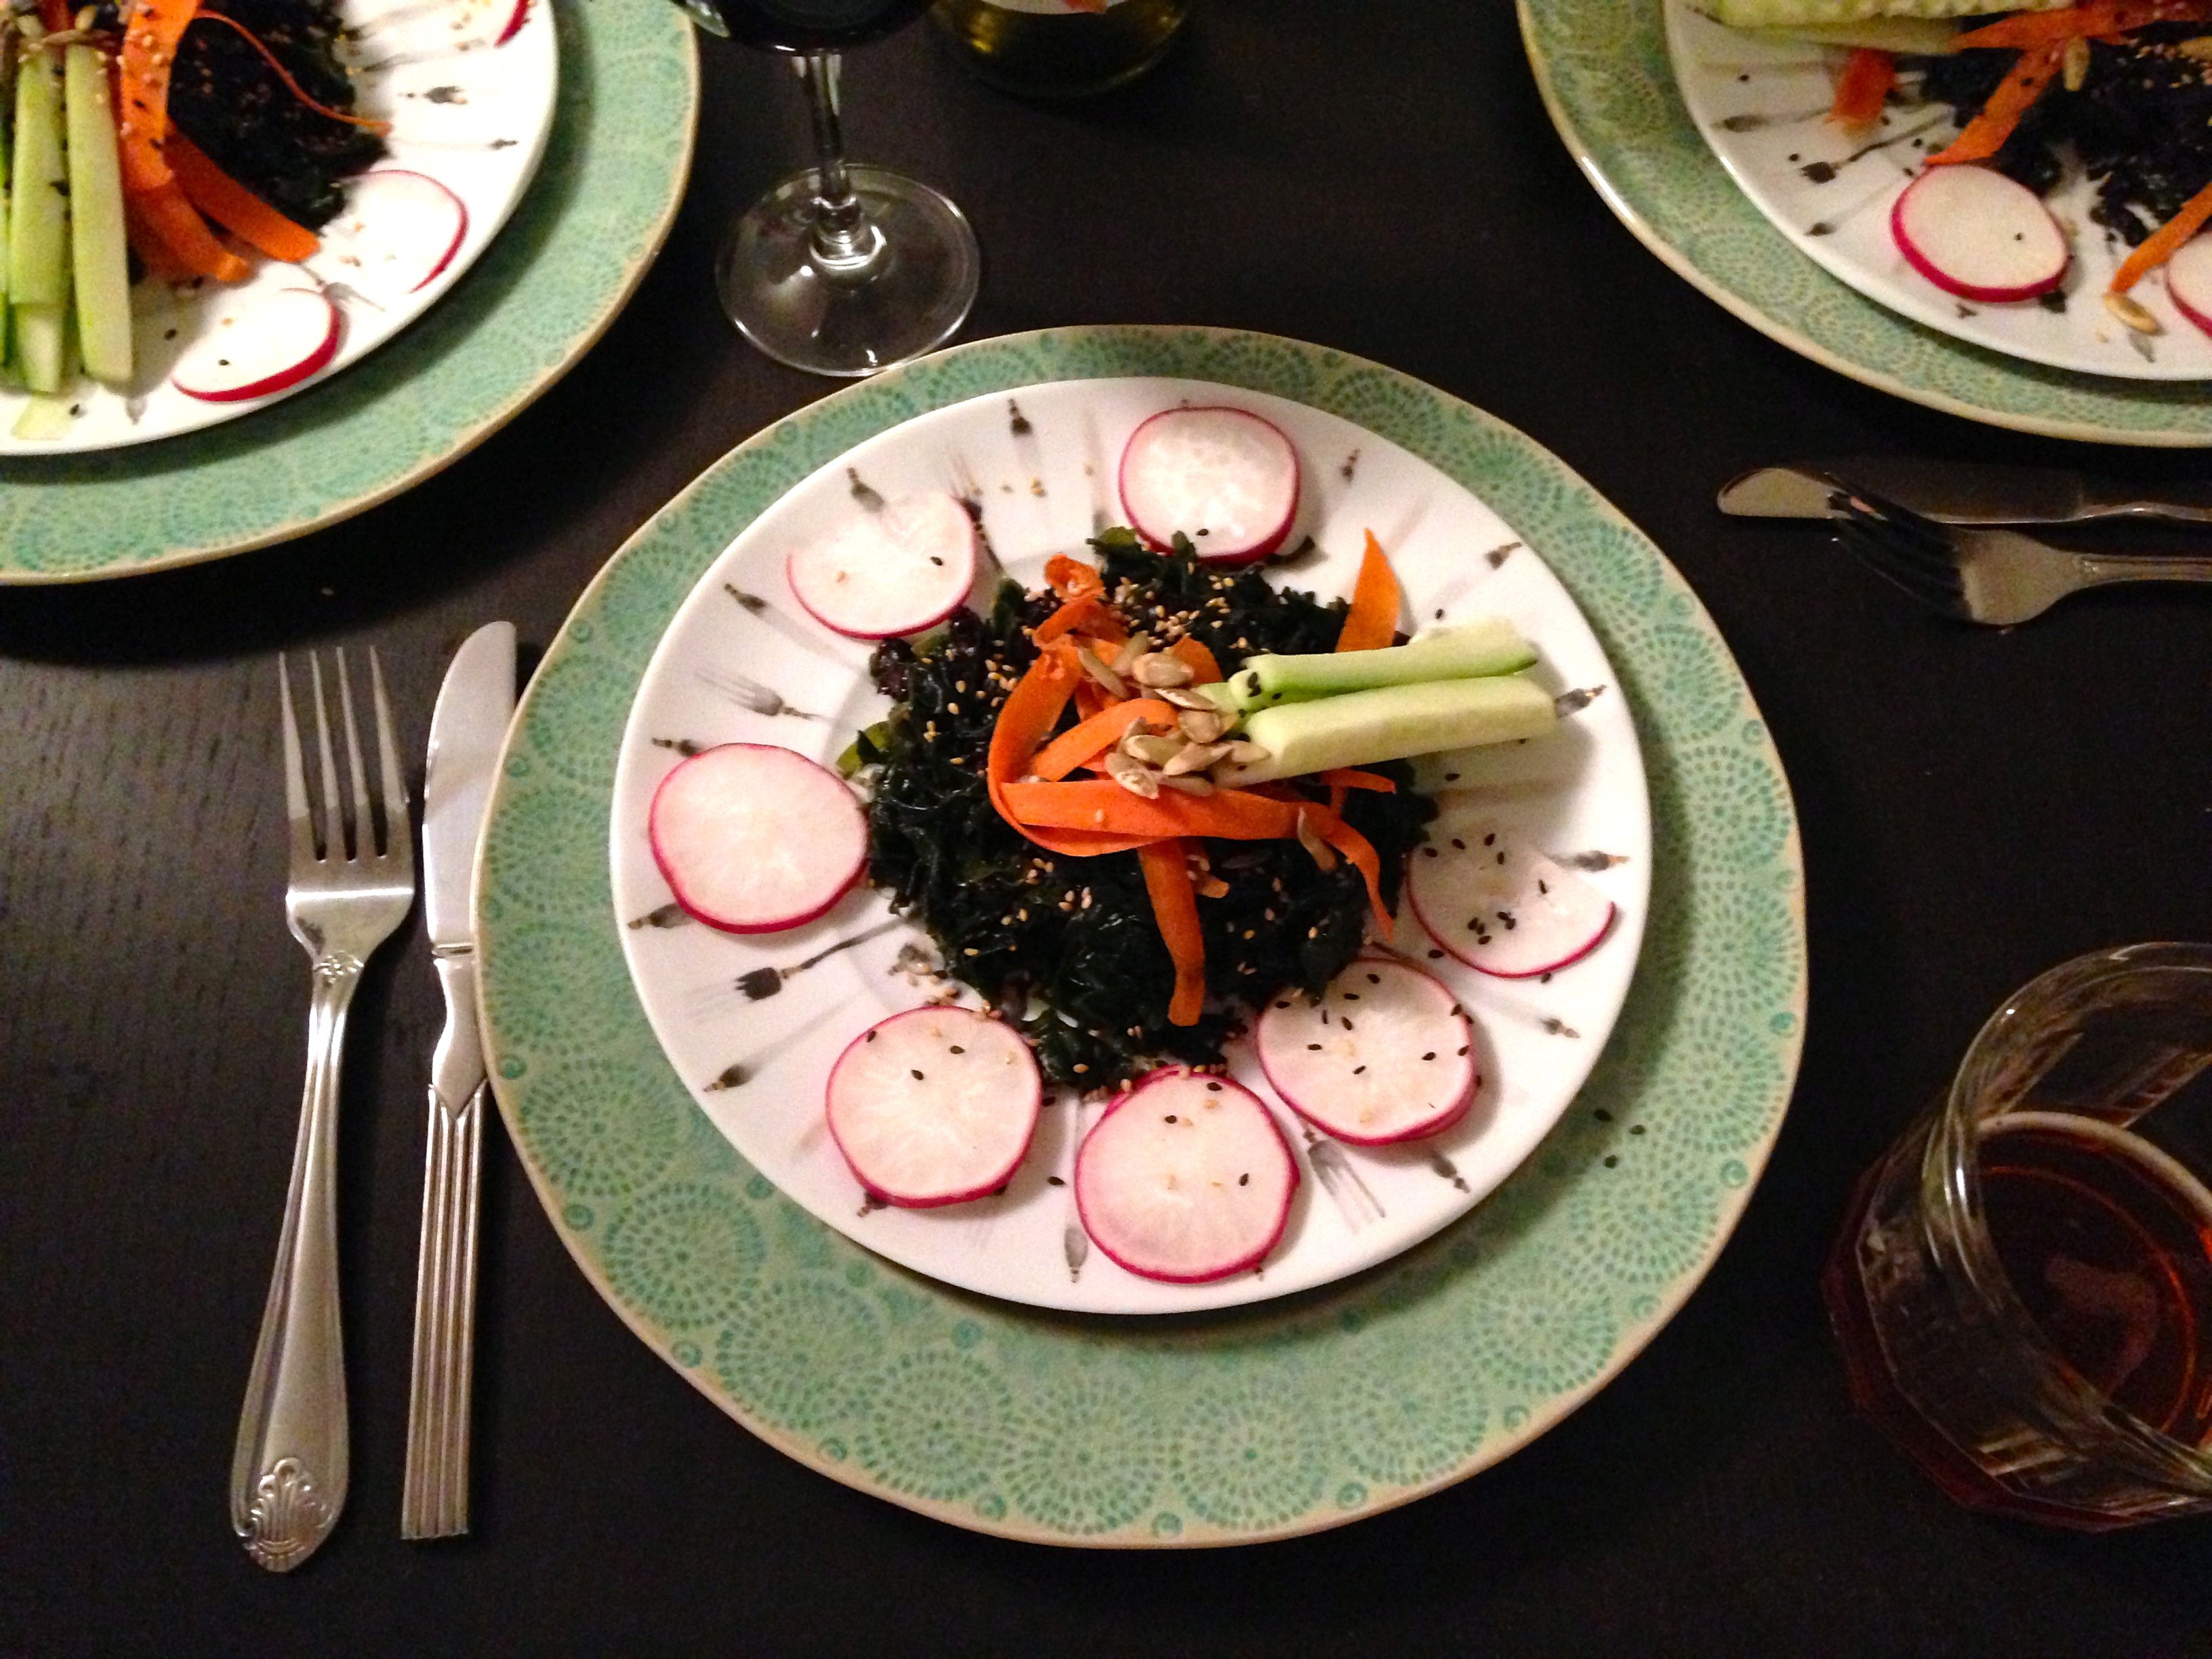 seaweed salad on table